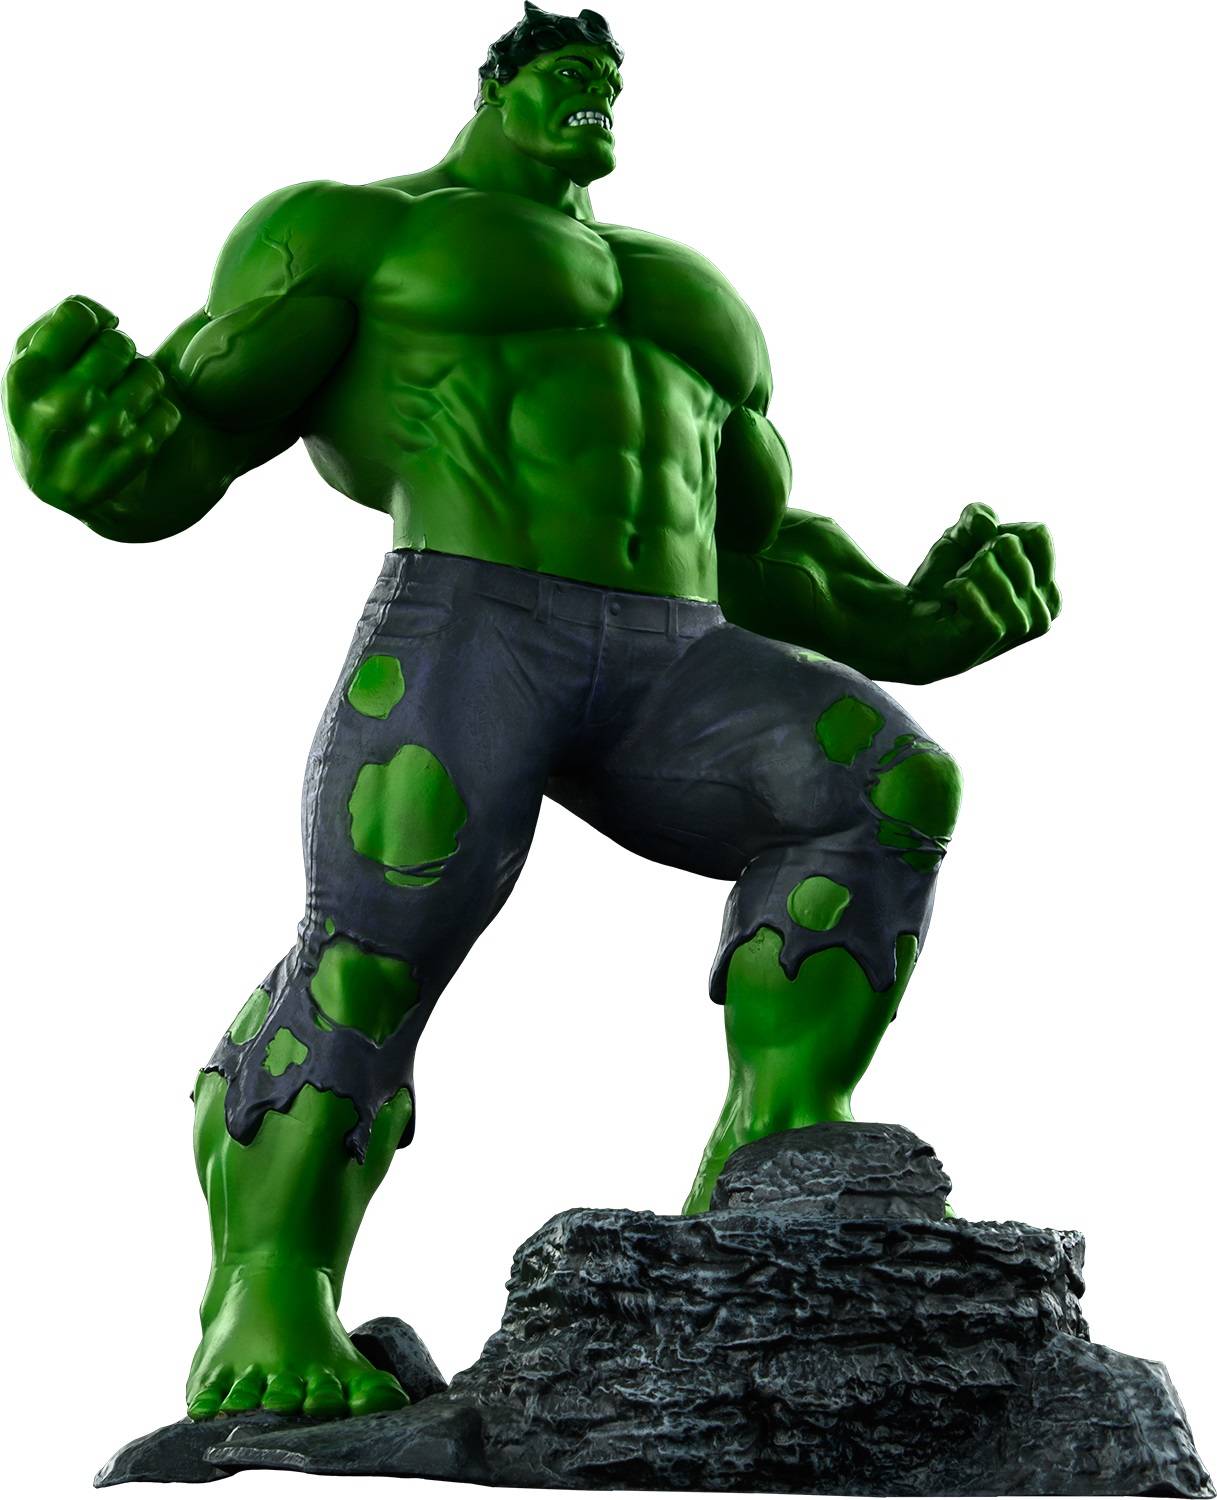 Bakrene vrtne skulpture vrhunske kvalitete - velika statua Hulka od staklenih vlakana u prirodnoj veličini na otvorenom u Kini – Atisan Works